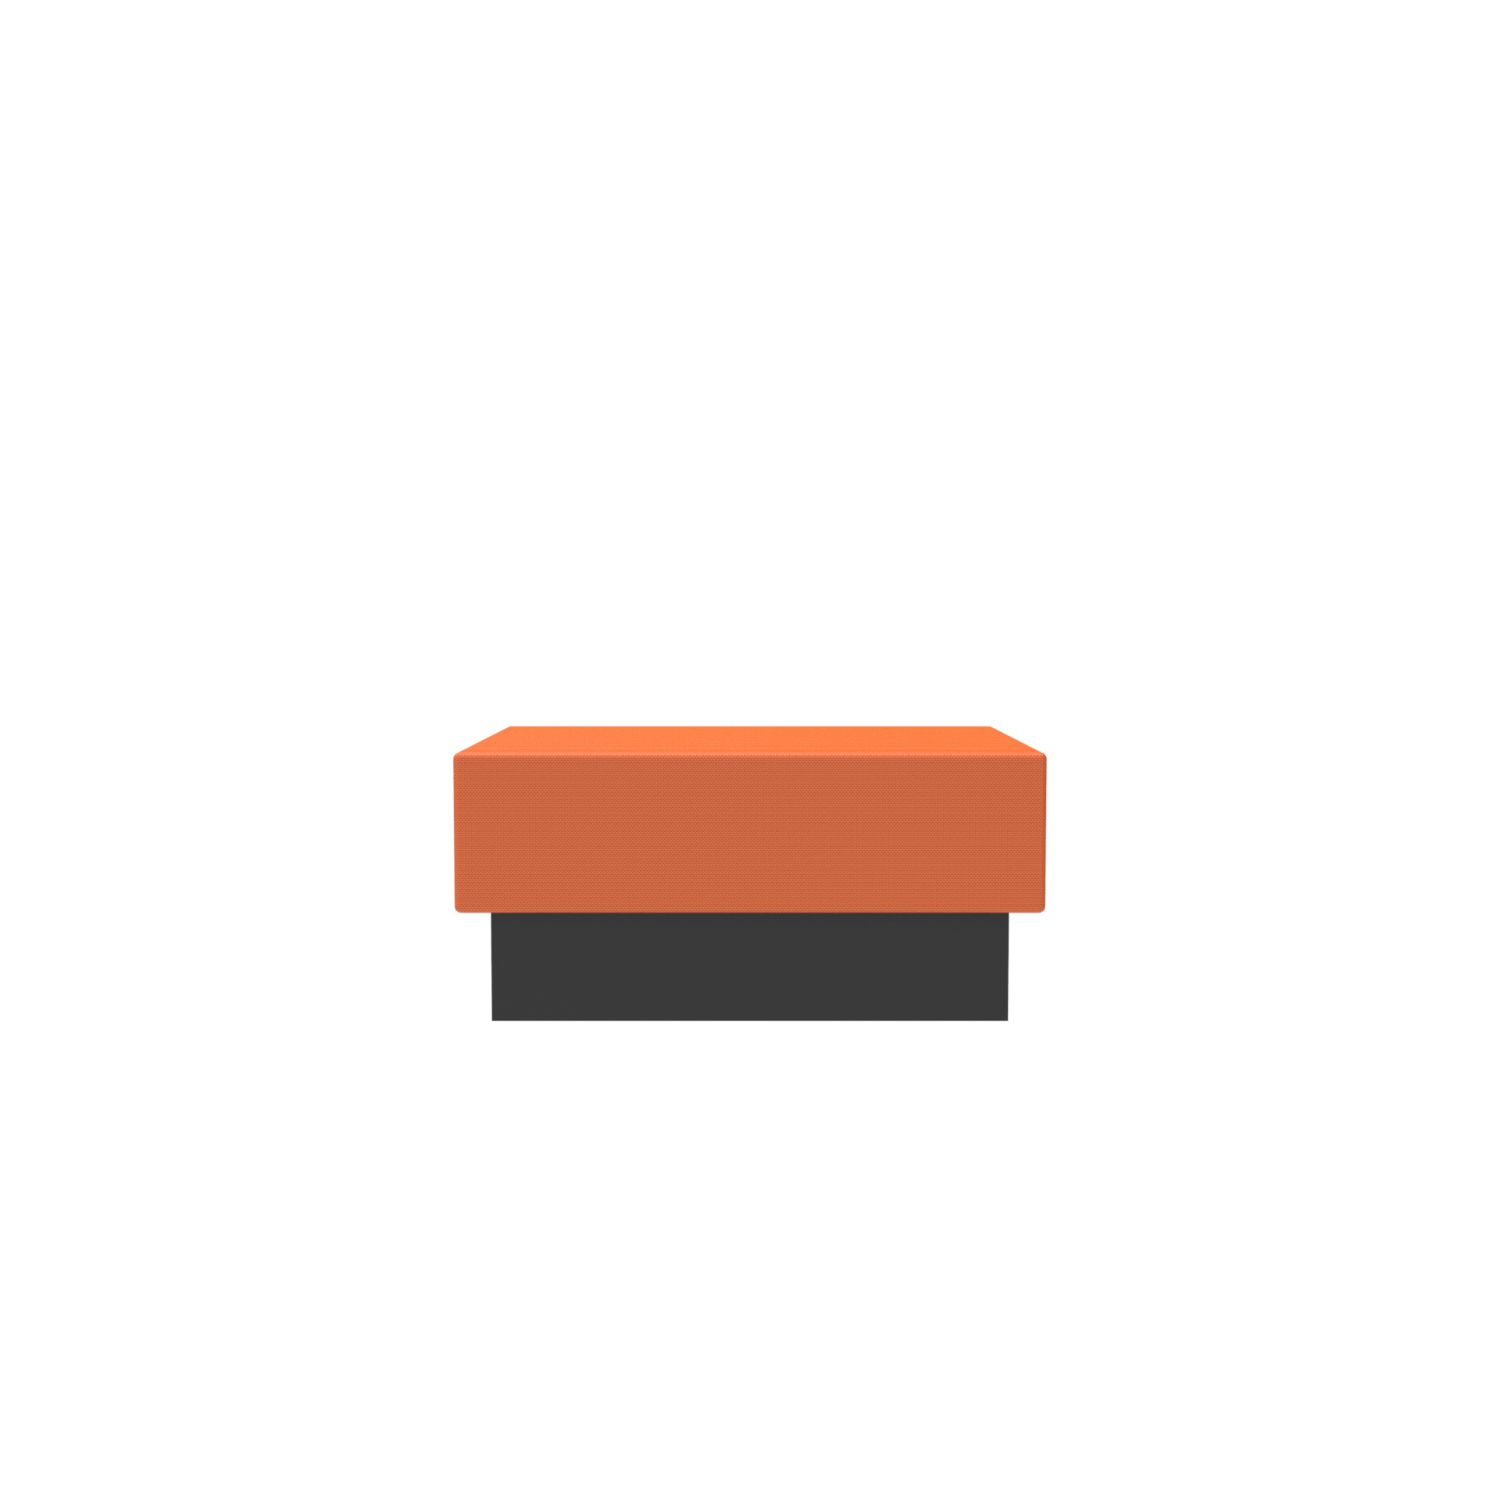 lensvelt oma blocks relaxing edition closed base without backrest 90 cm width burn orange 102 black ral9005 hard leg ends